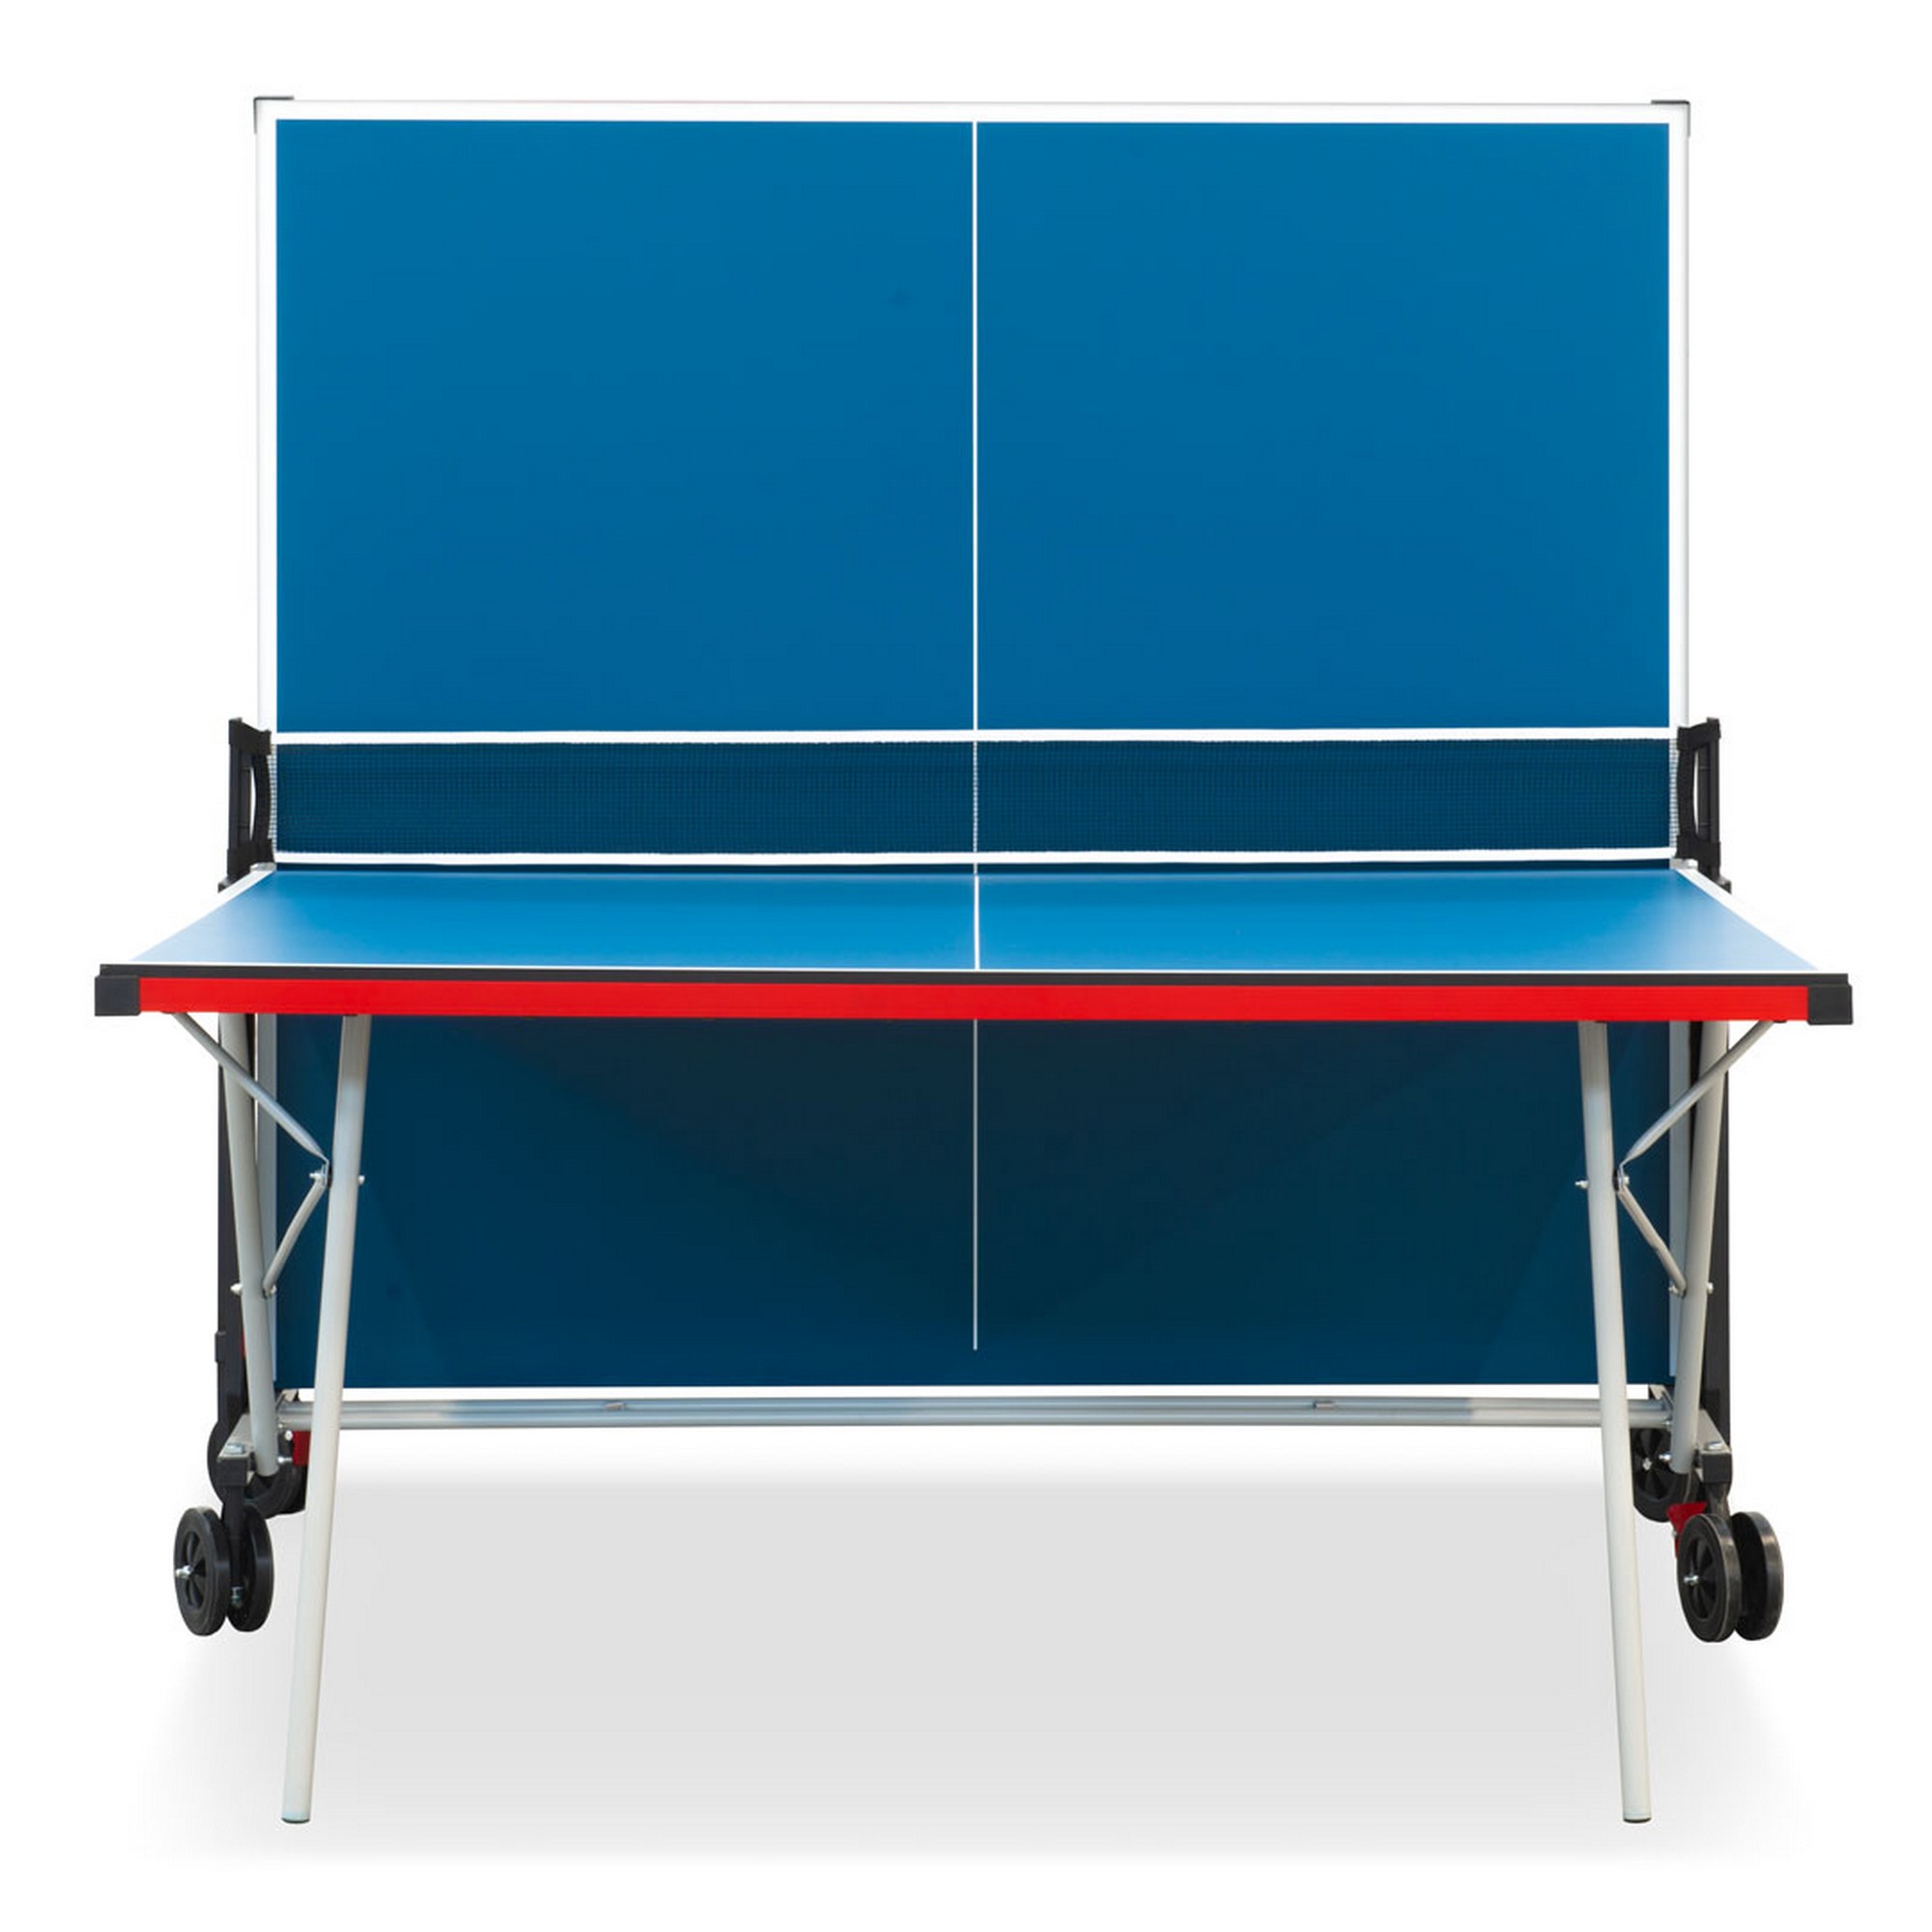 Теннисный стол складной для помещений S-150 Winner 51.150.02.0 2000_2000